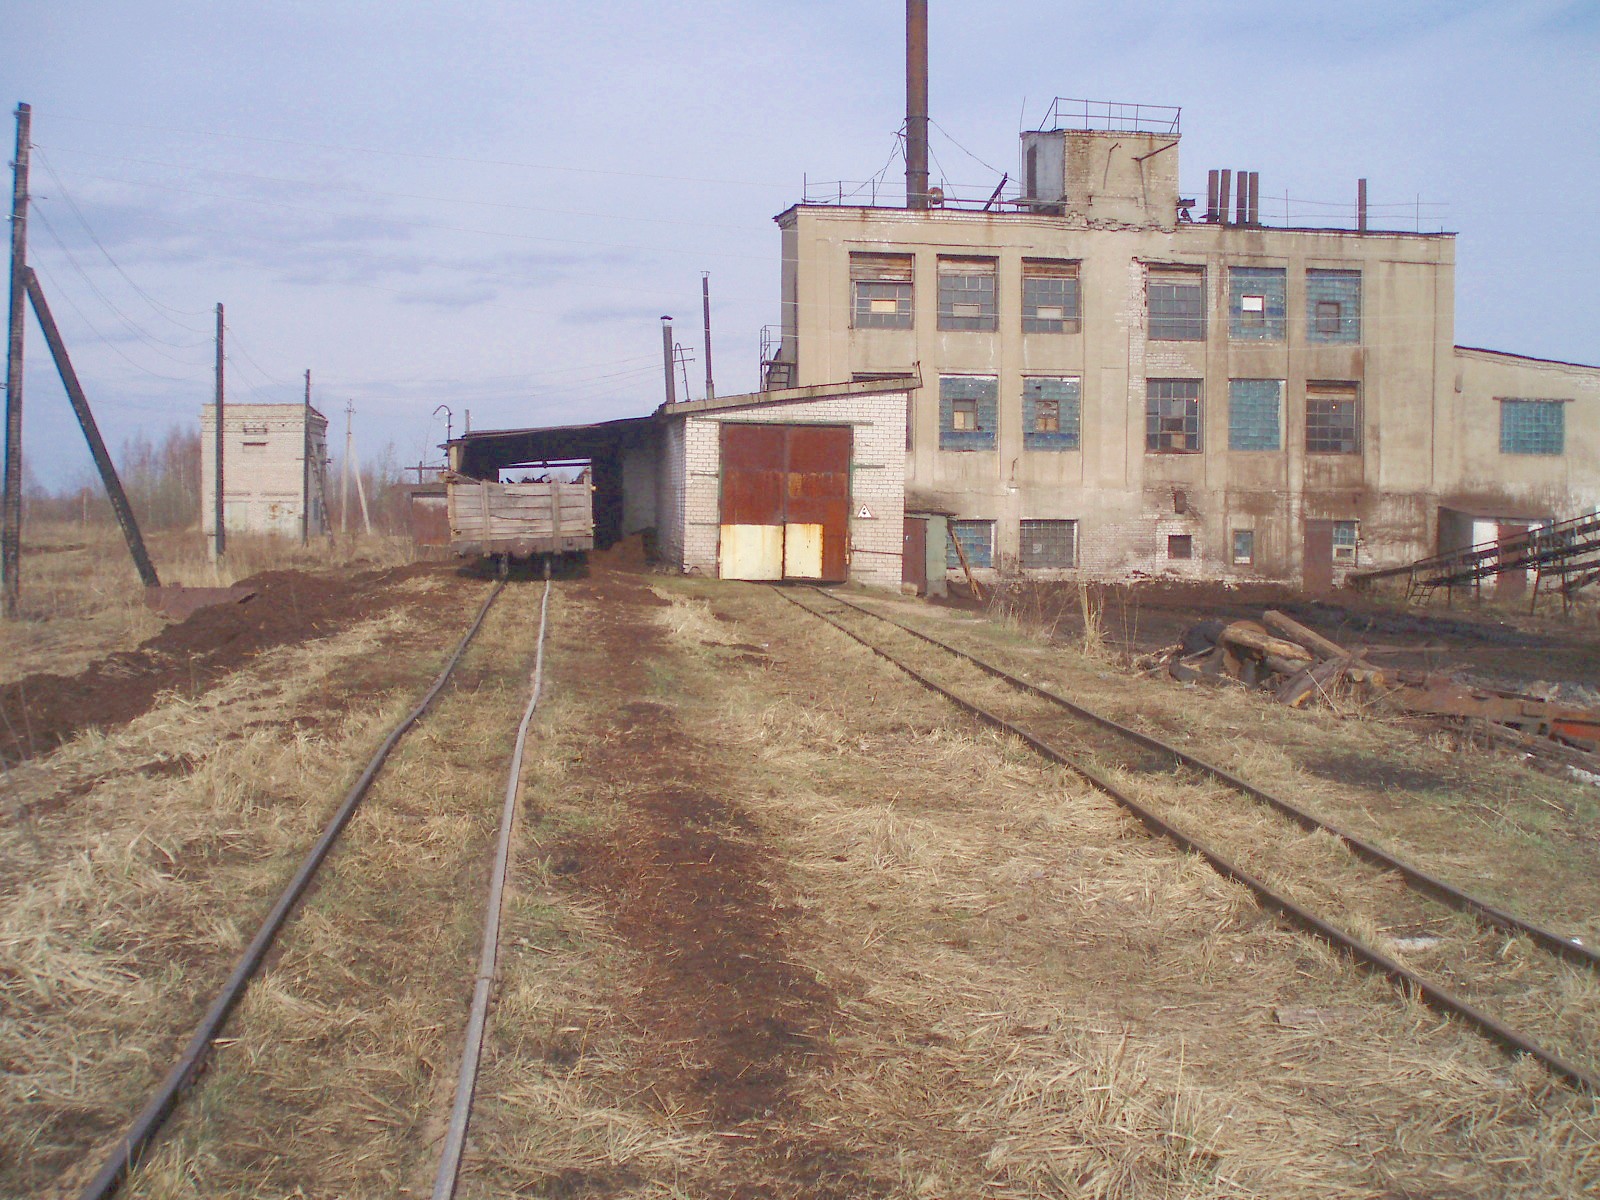 Узкоколейная железная дорога Кимрского торфопредприятия  — фотографии, сделанные в 2007 году (часть 18)